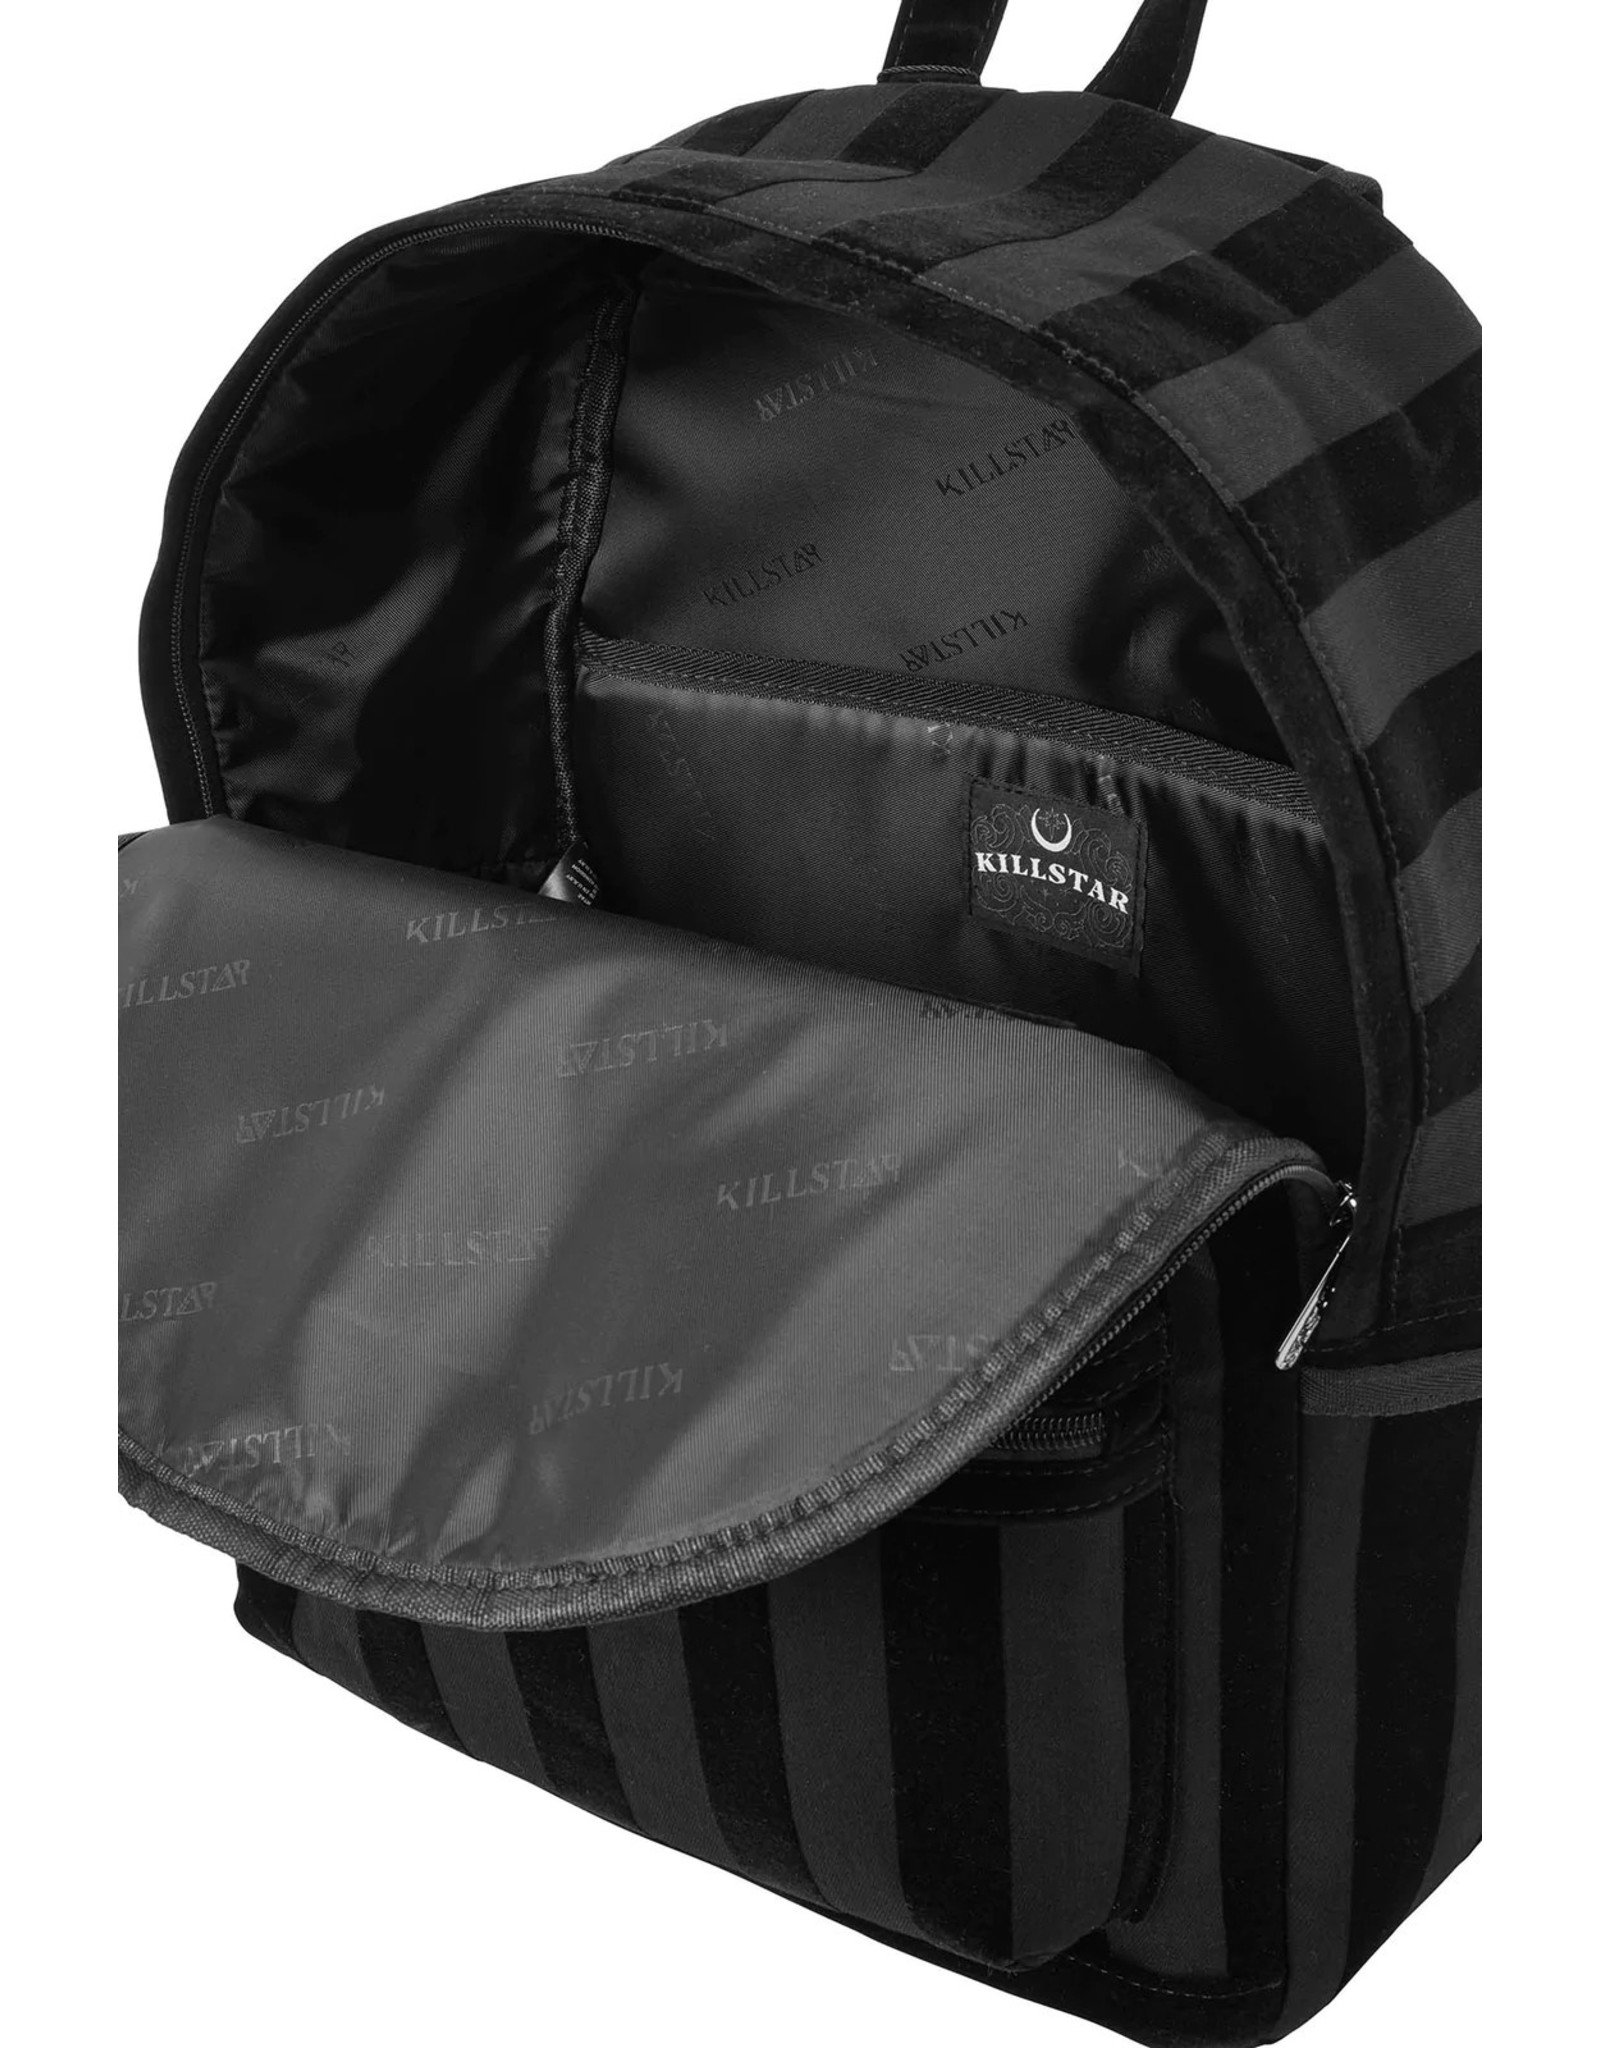 Killstar Killstar bags and accessiries - Killstar Earn Your Stripes Backpack